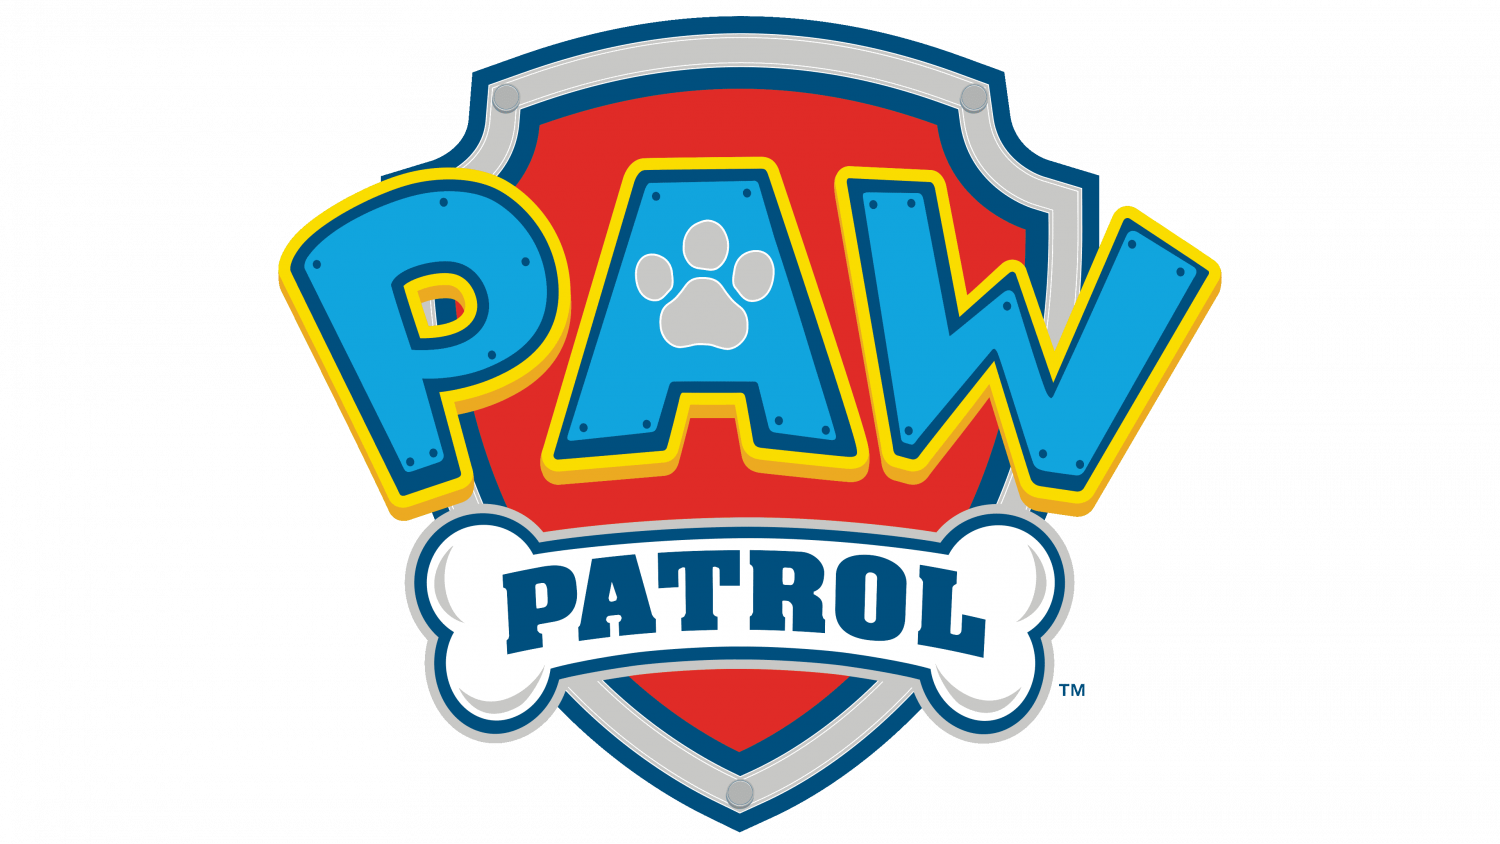 PAW patrol